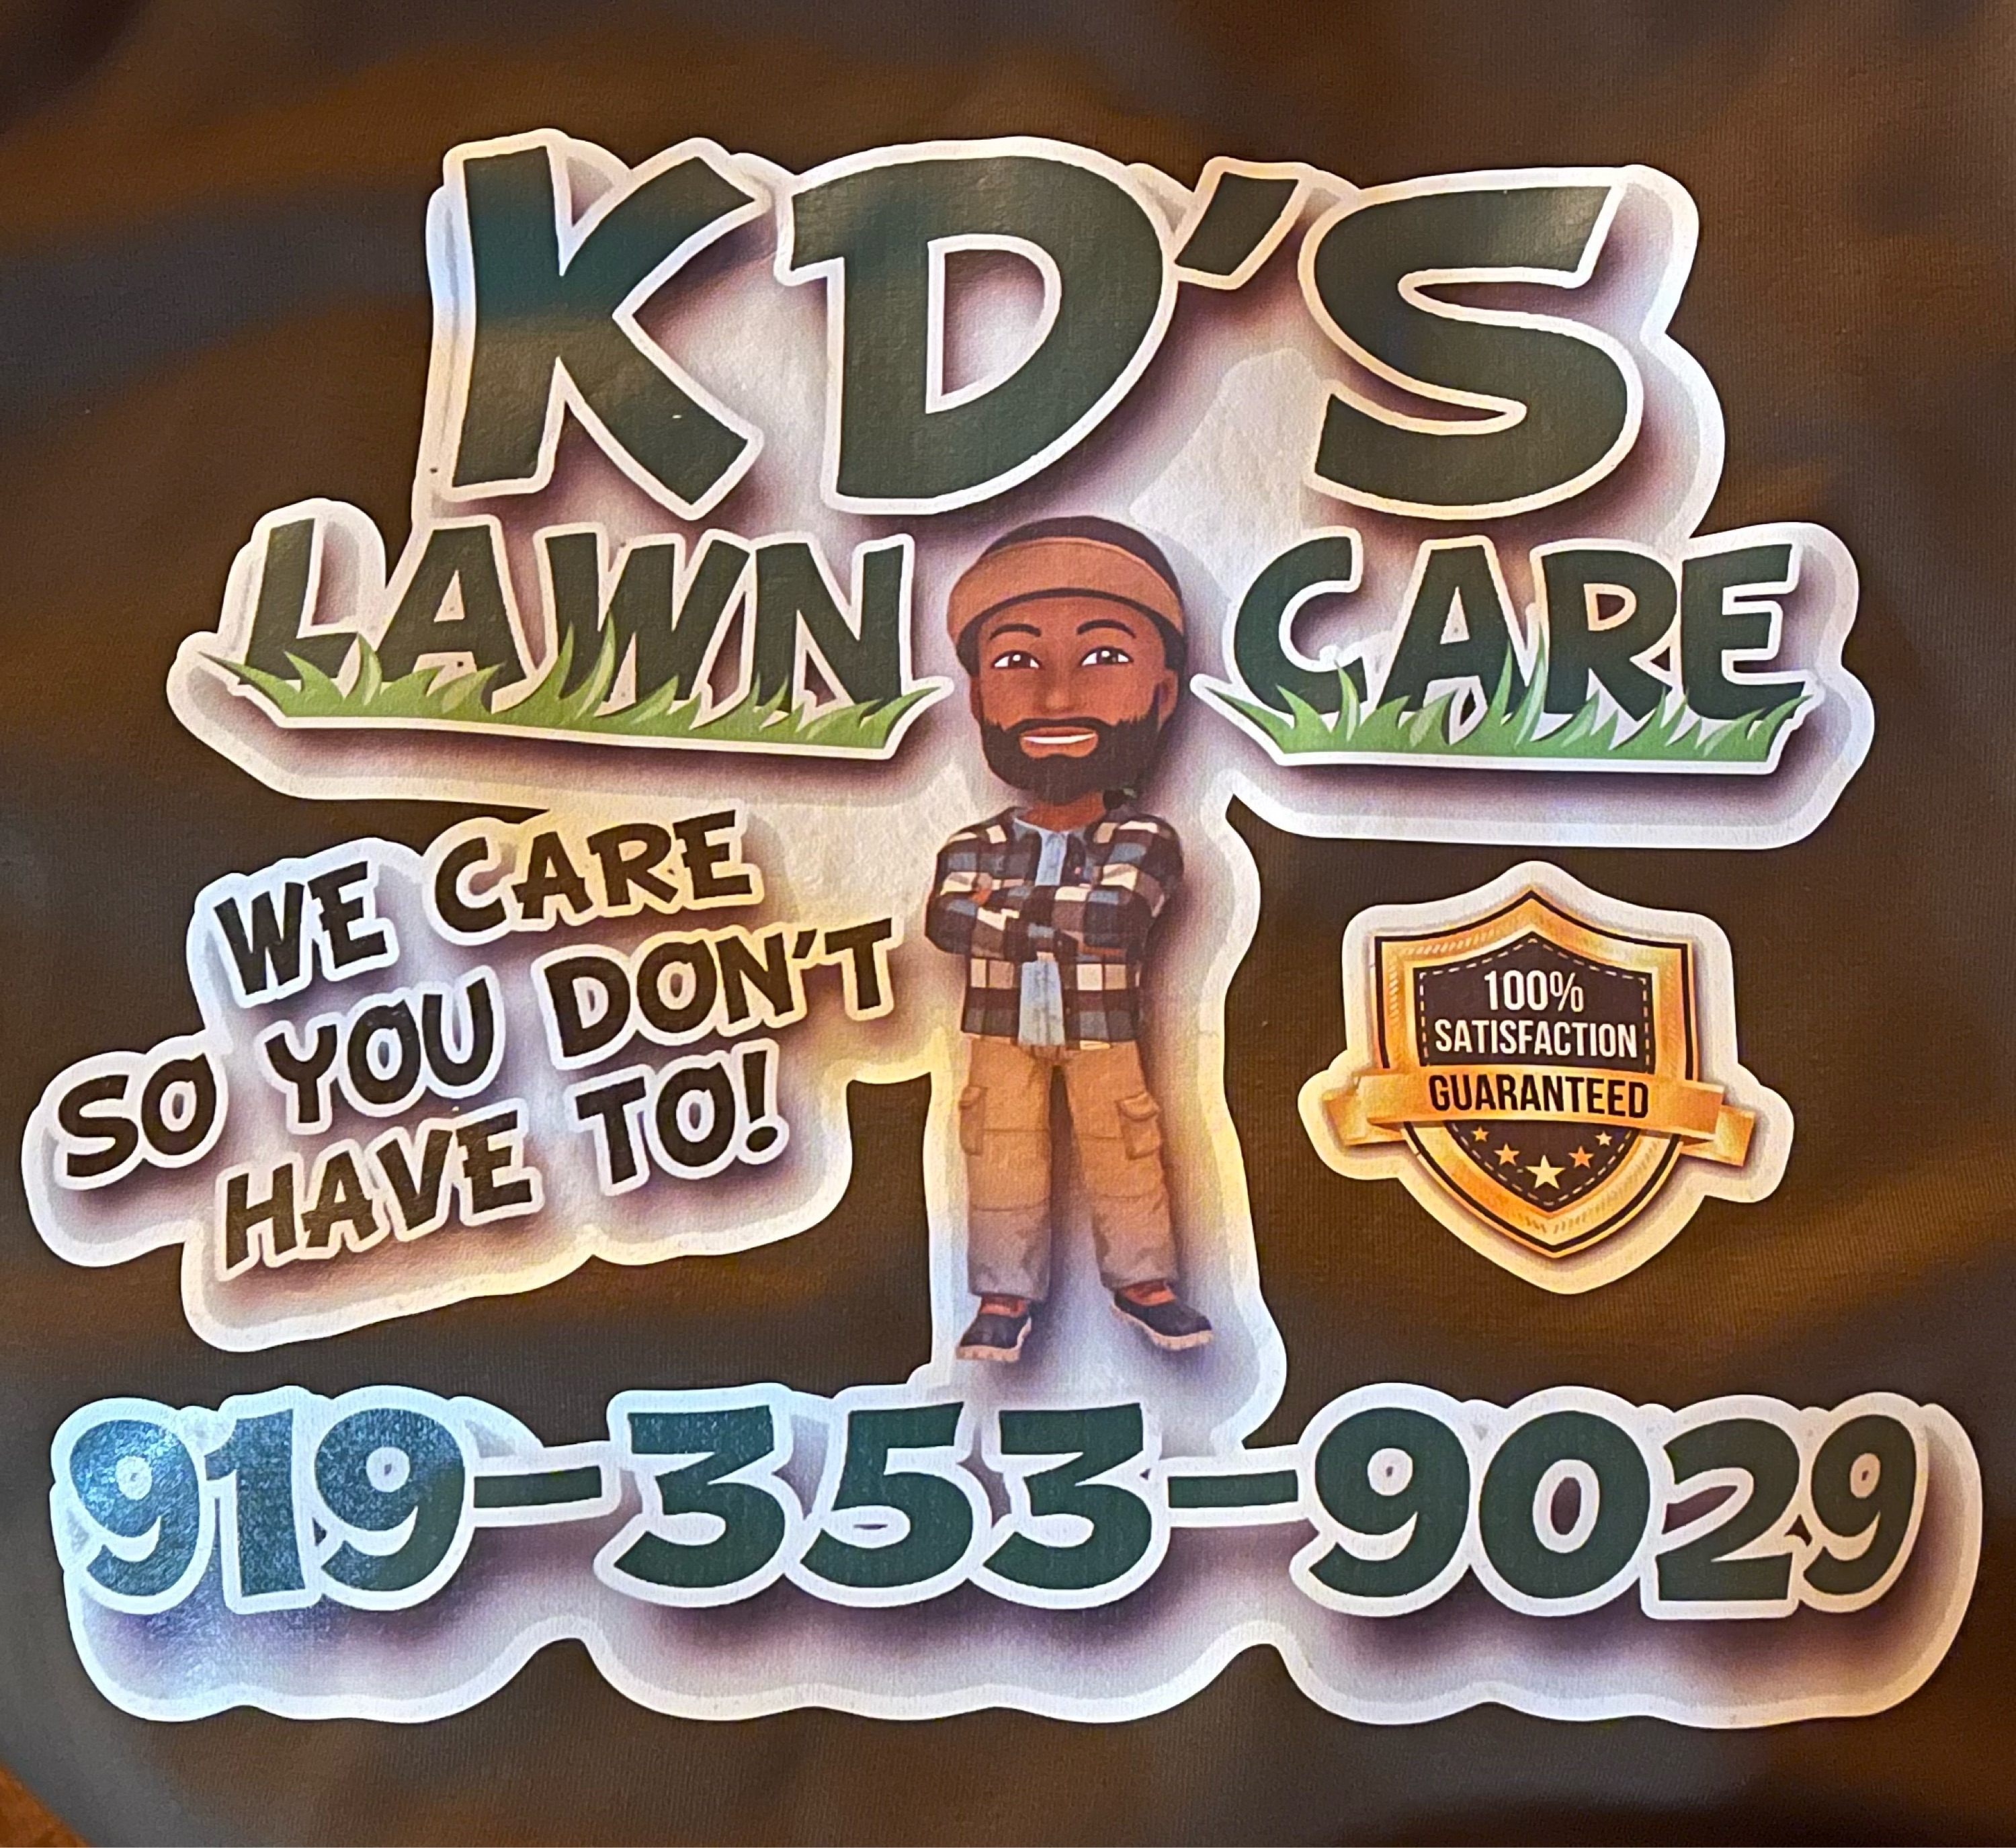 KDS Lawn Care Services Logo